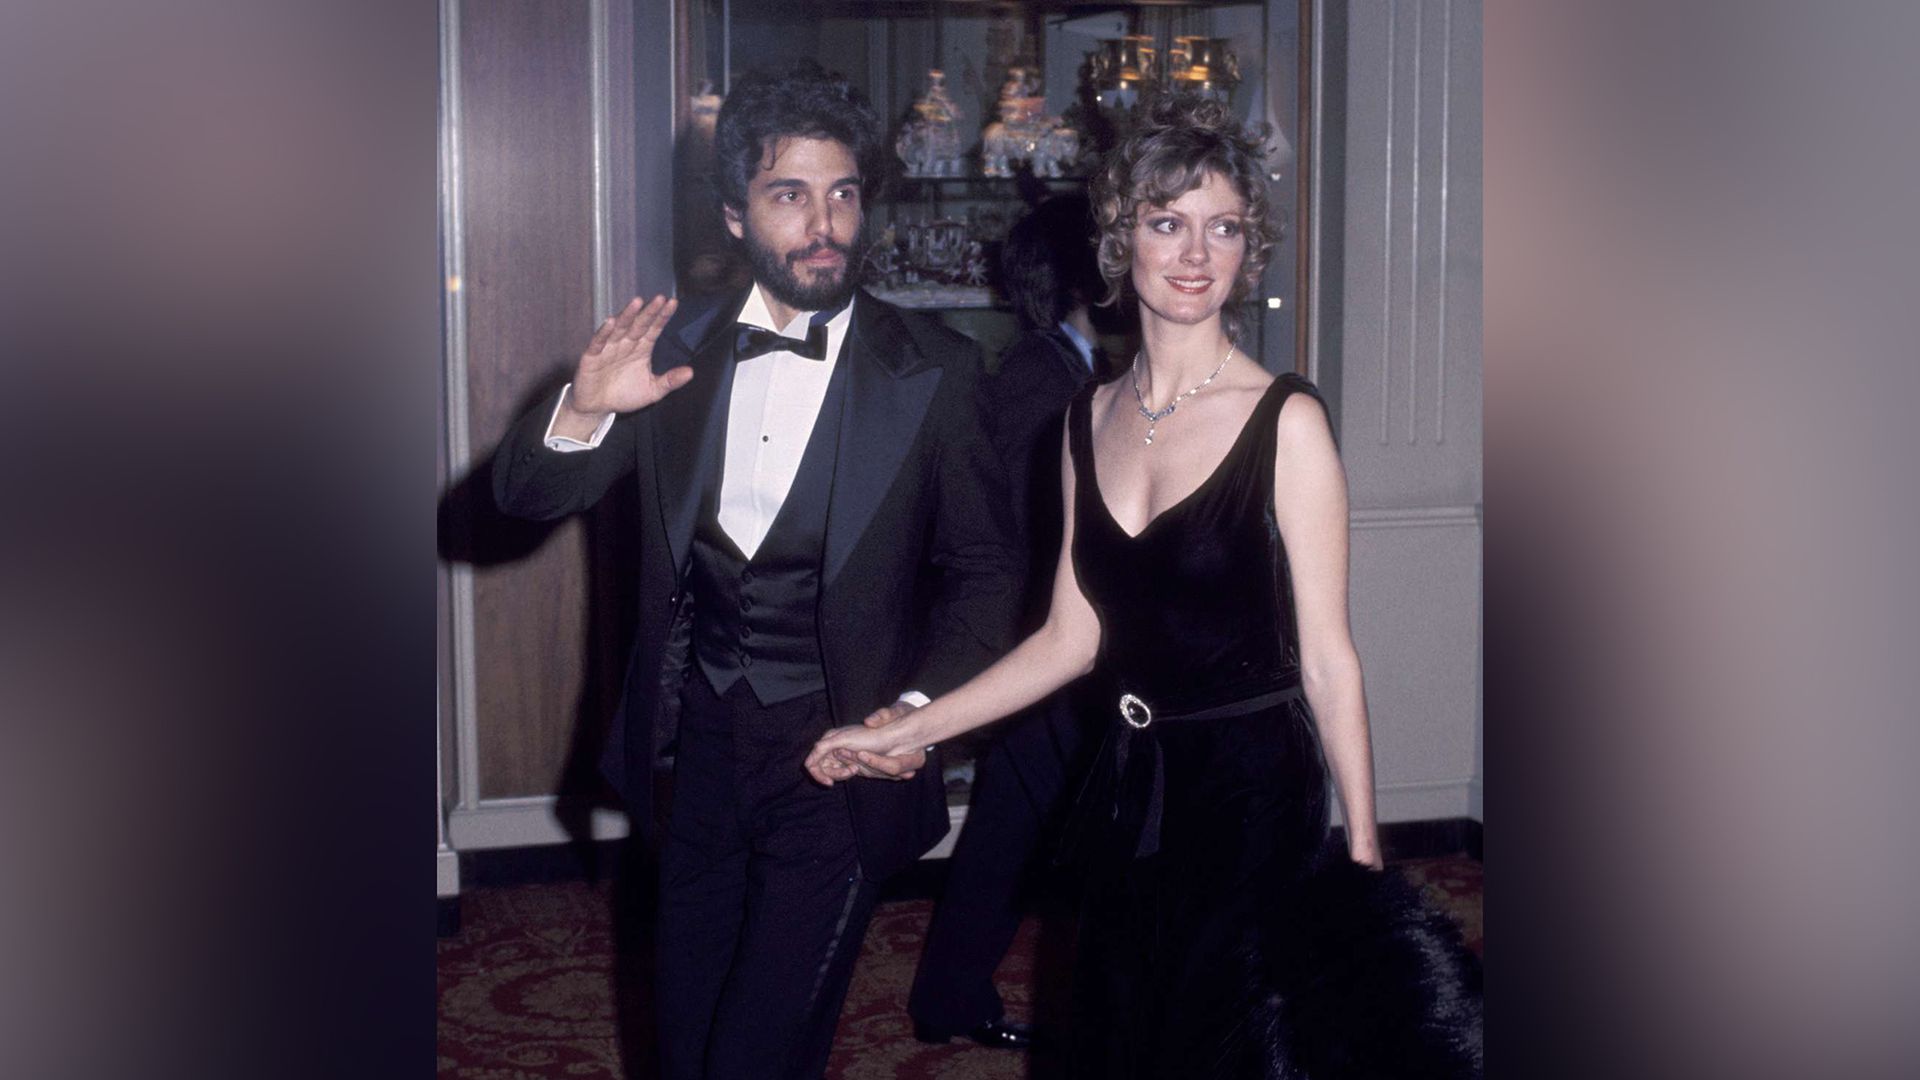 Susan Sarandon and Chris Sarandon